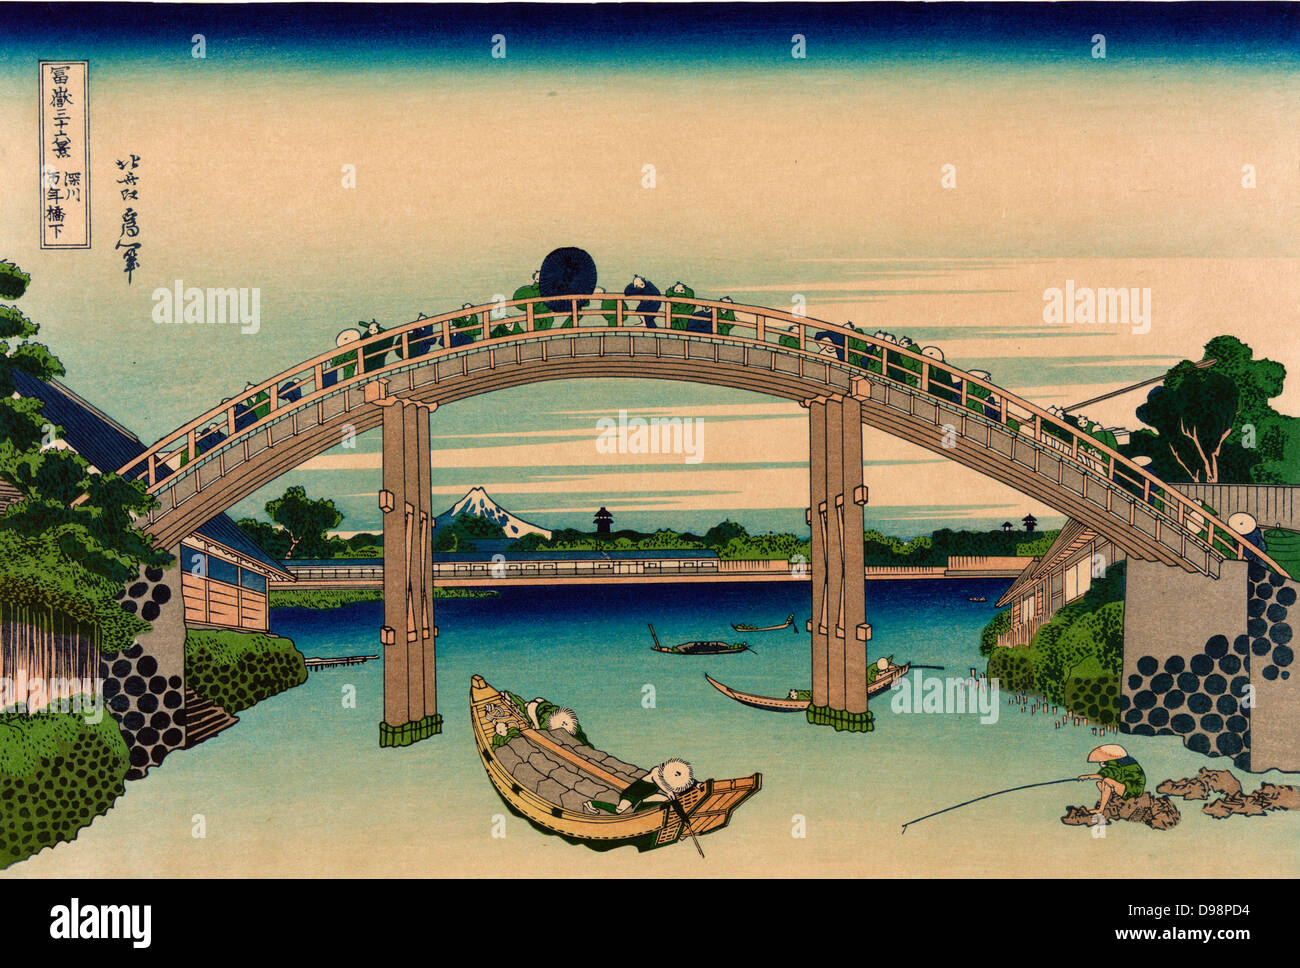 Vu à travers les Mannenbashi. À partir de 'trente-six vues du Mont Fuji", c1831. Katsushika Hokusai (1760-1849) artiste japonais Ukiyo-e. Onaki pont piétonnier de la rivière Edo Tokyo Japon Pêcheurs Bateau Banque D'Images